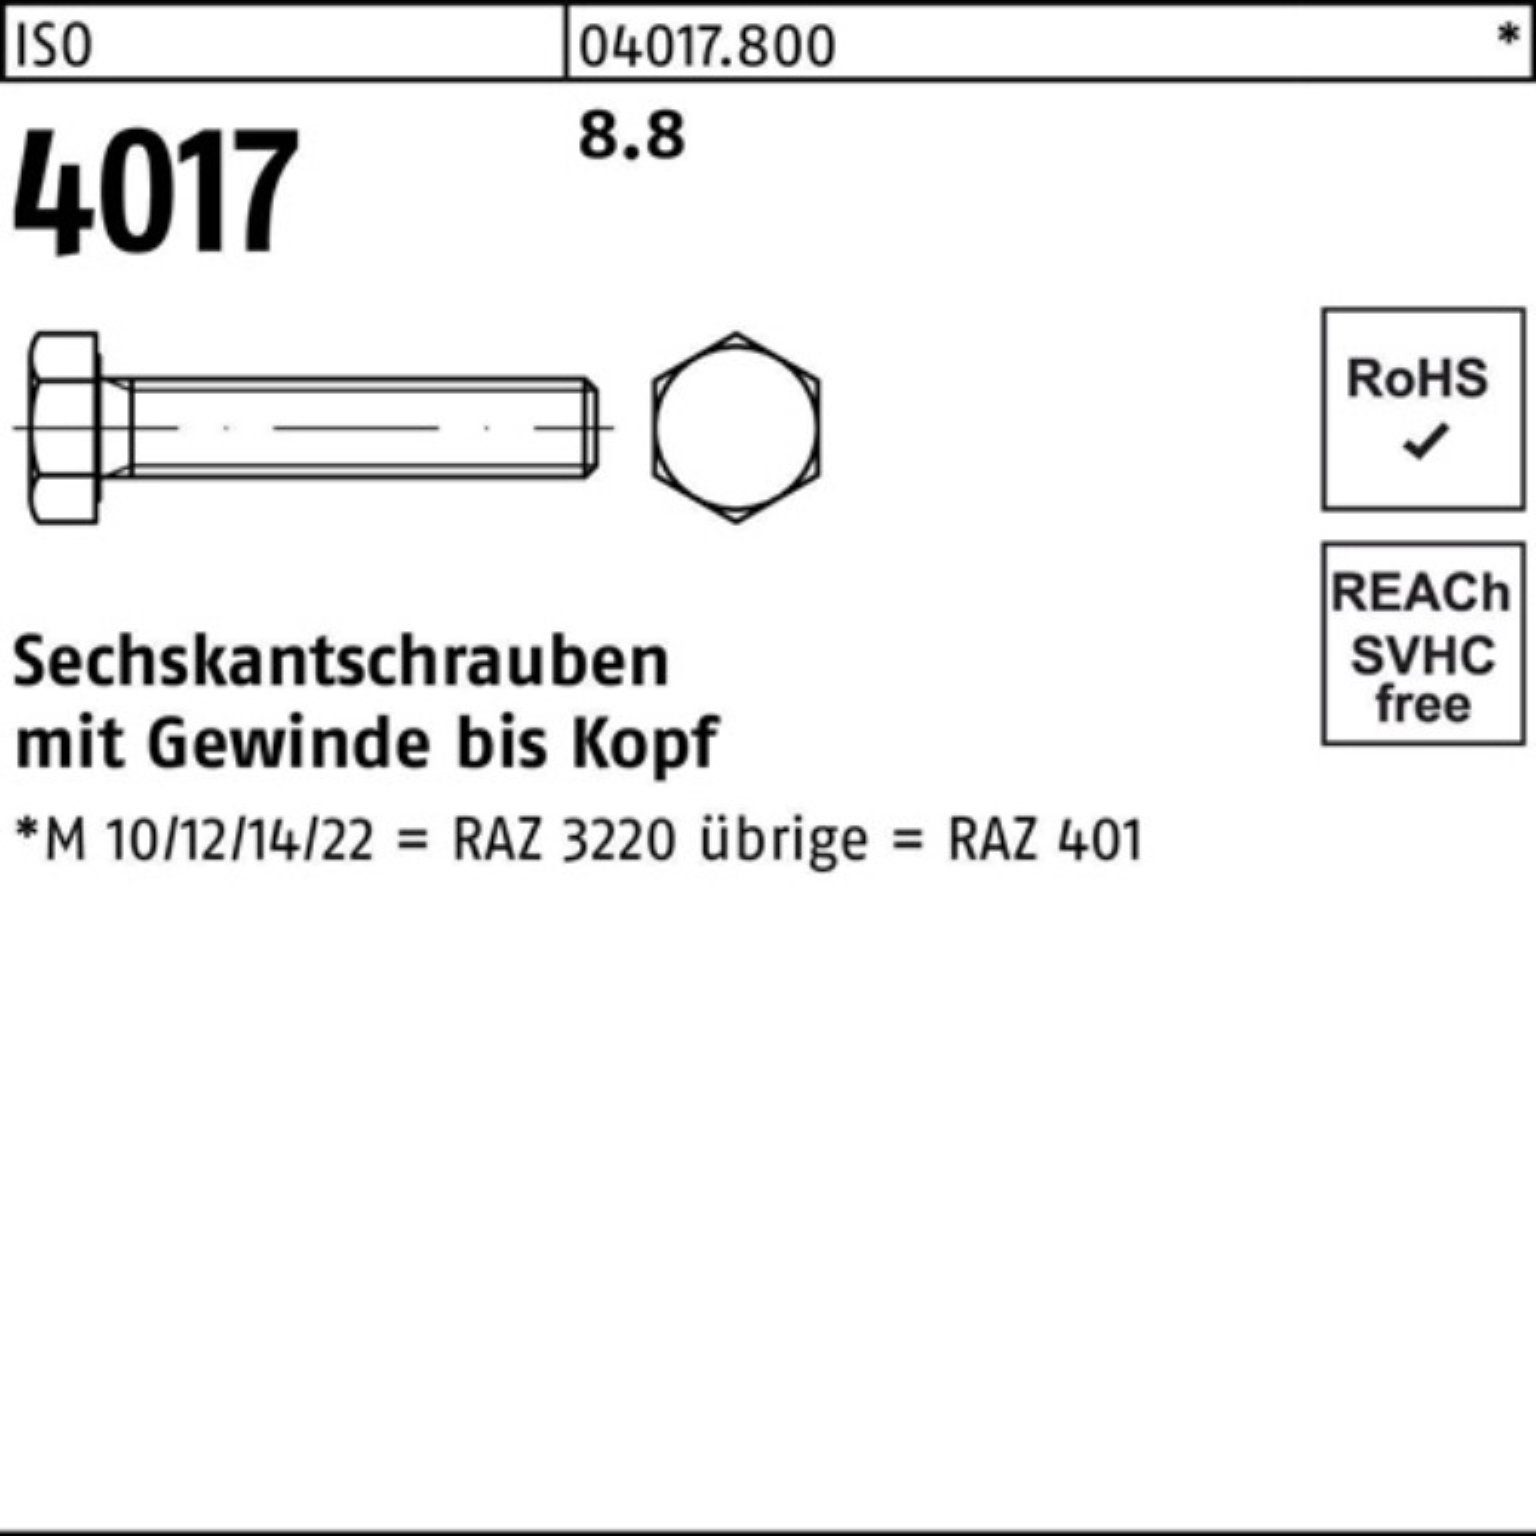 Bufab Sechskantschraube 100er Pack Stück 100 8.8 M8x Sechskantschraube 90 4017 ISO VG 401 ISO